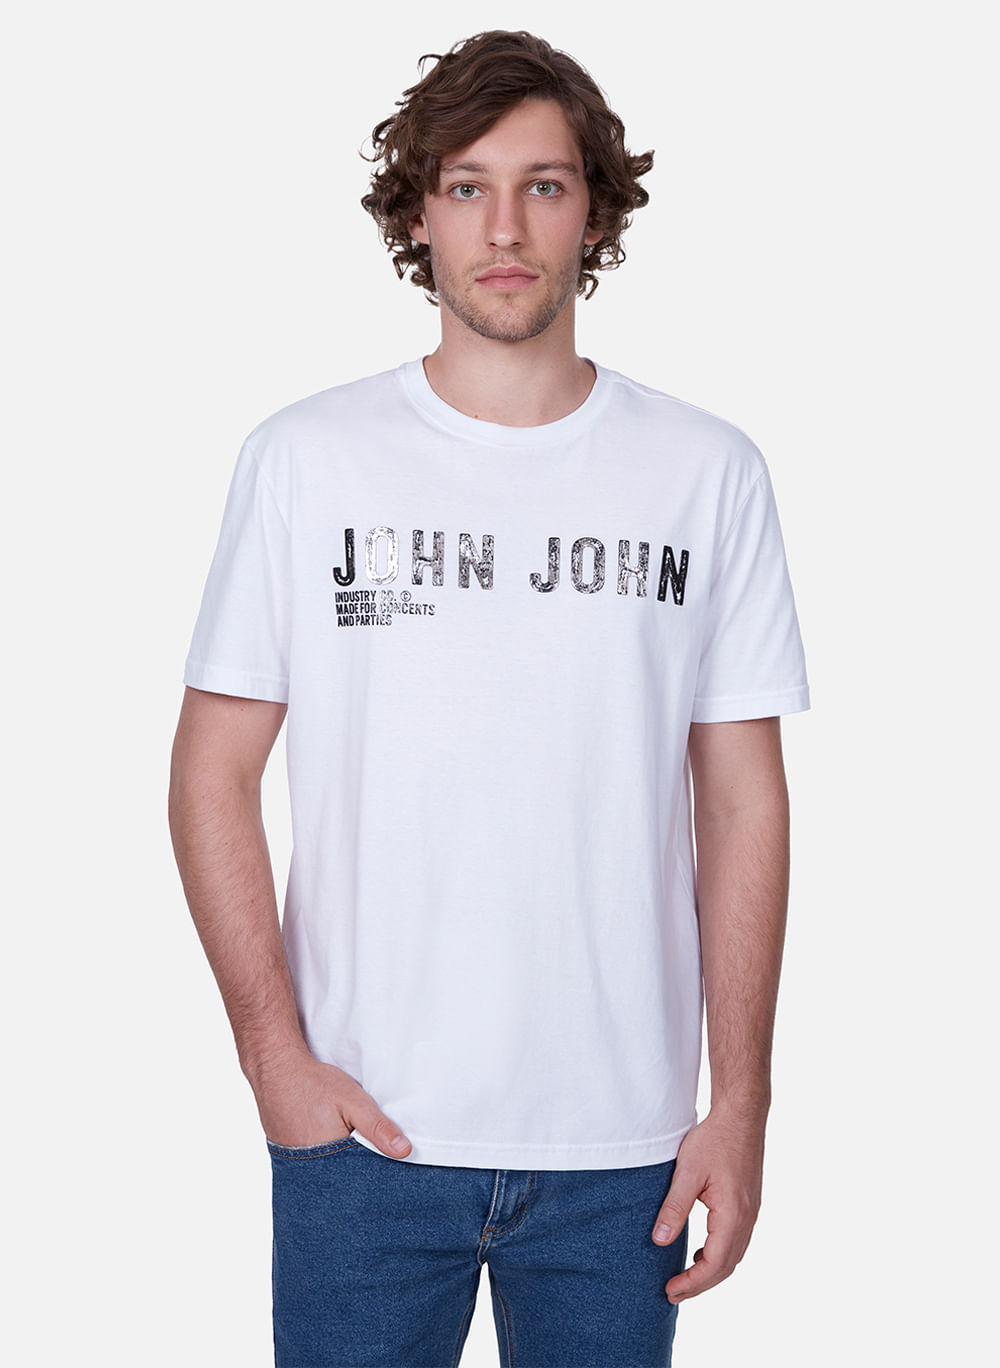 Camiseta John Transfer Black John John Masculina 42.54.5186 - Camiseta John  Transfer Black John John Masculina - JOHN JOHN MASC